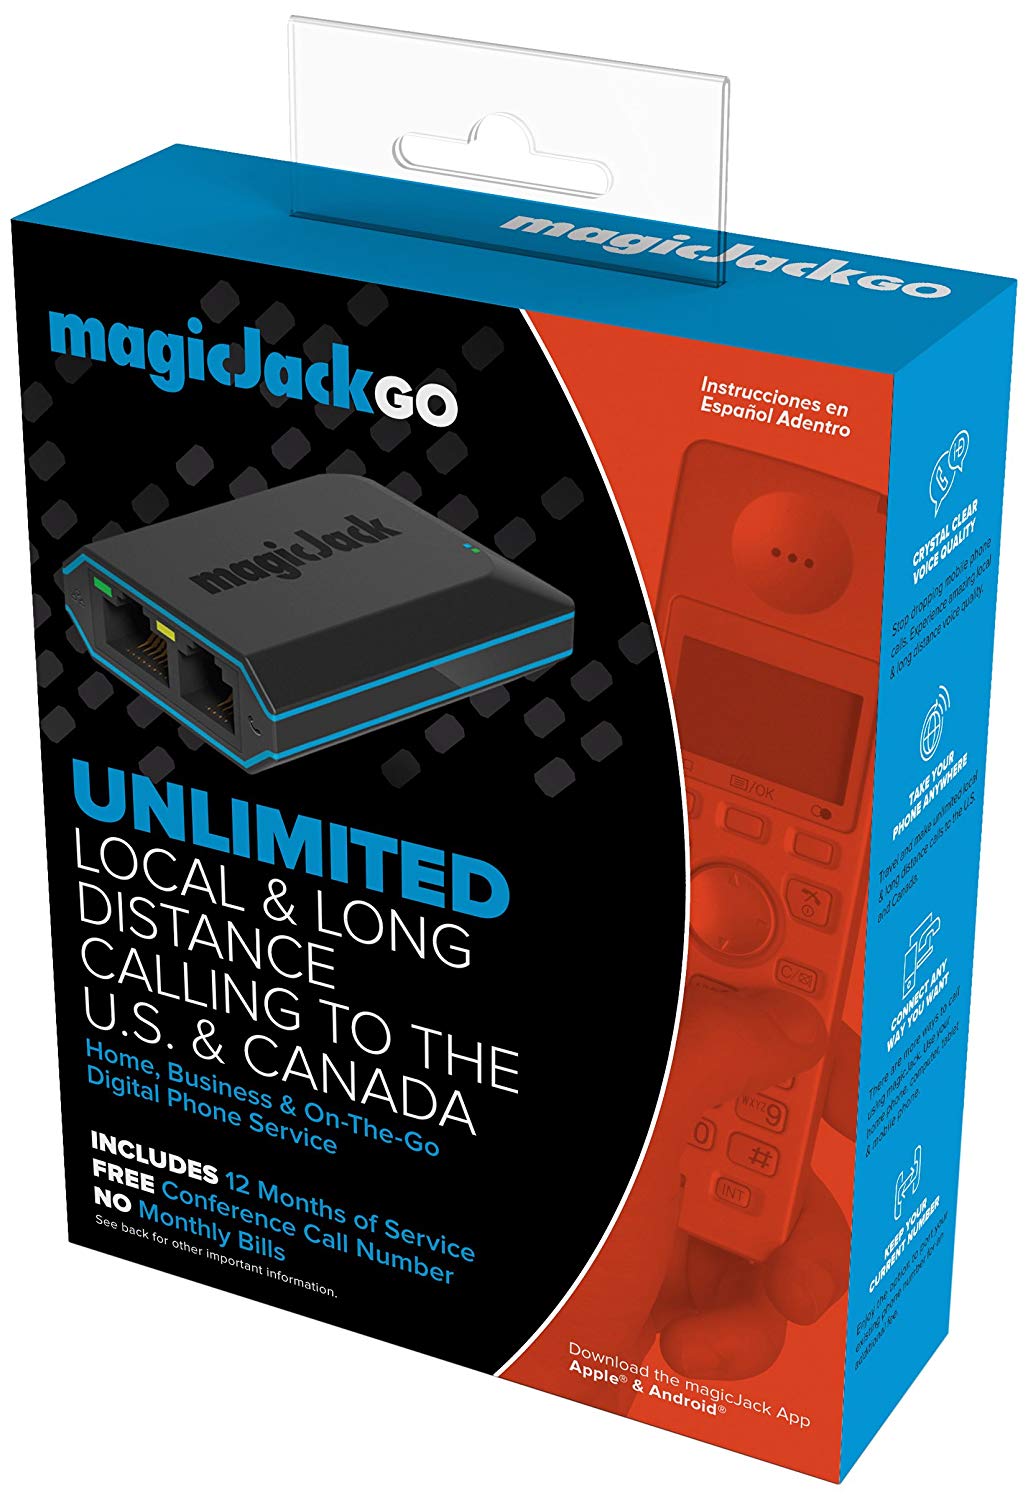 MagicJackGo  servicio de teléfono digital portátil residencial, comercial y móvil que le permite realizar llamadas locales y de larga distancia ilimitadas a los EE. UU. y Canadá.